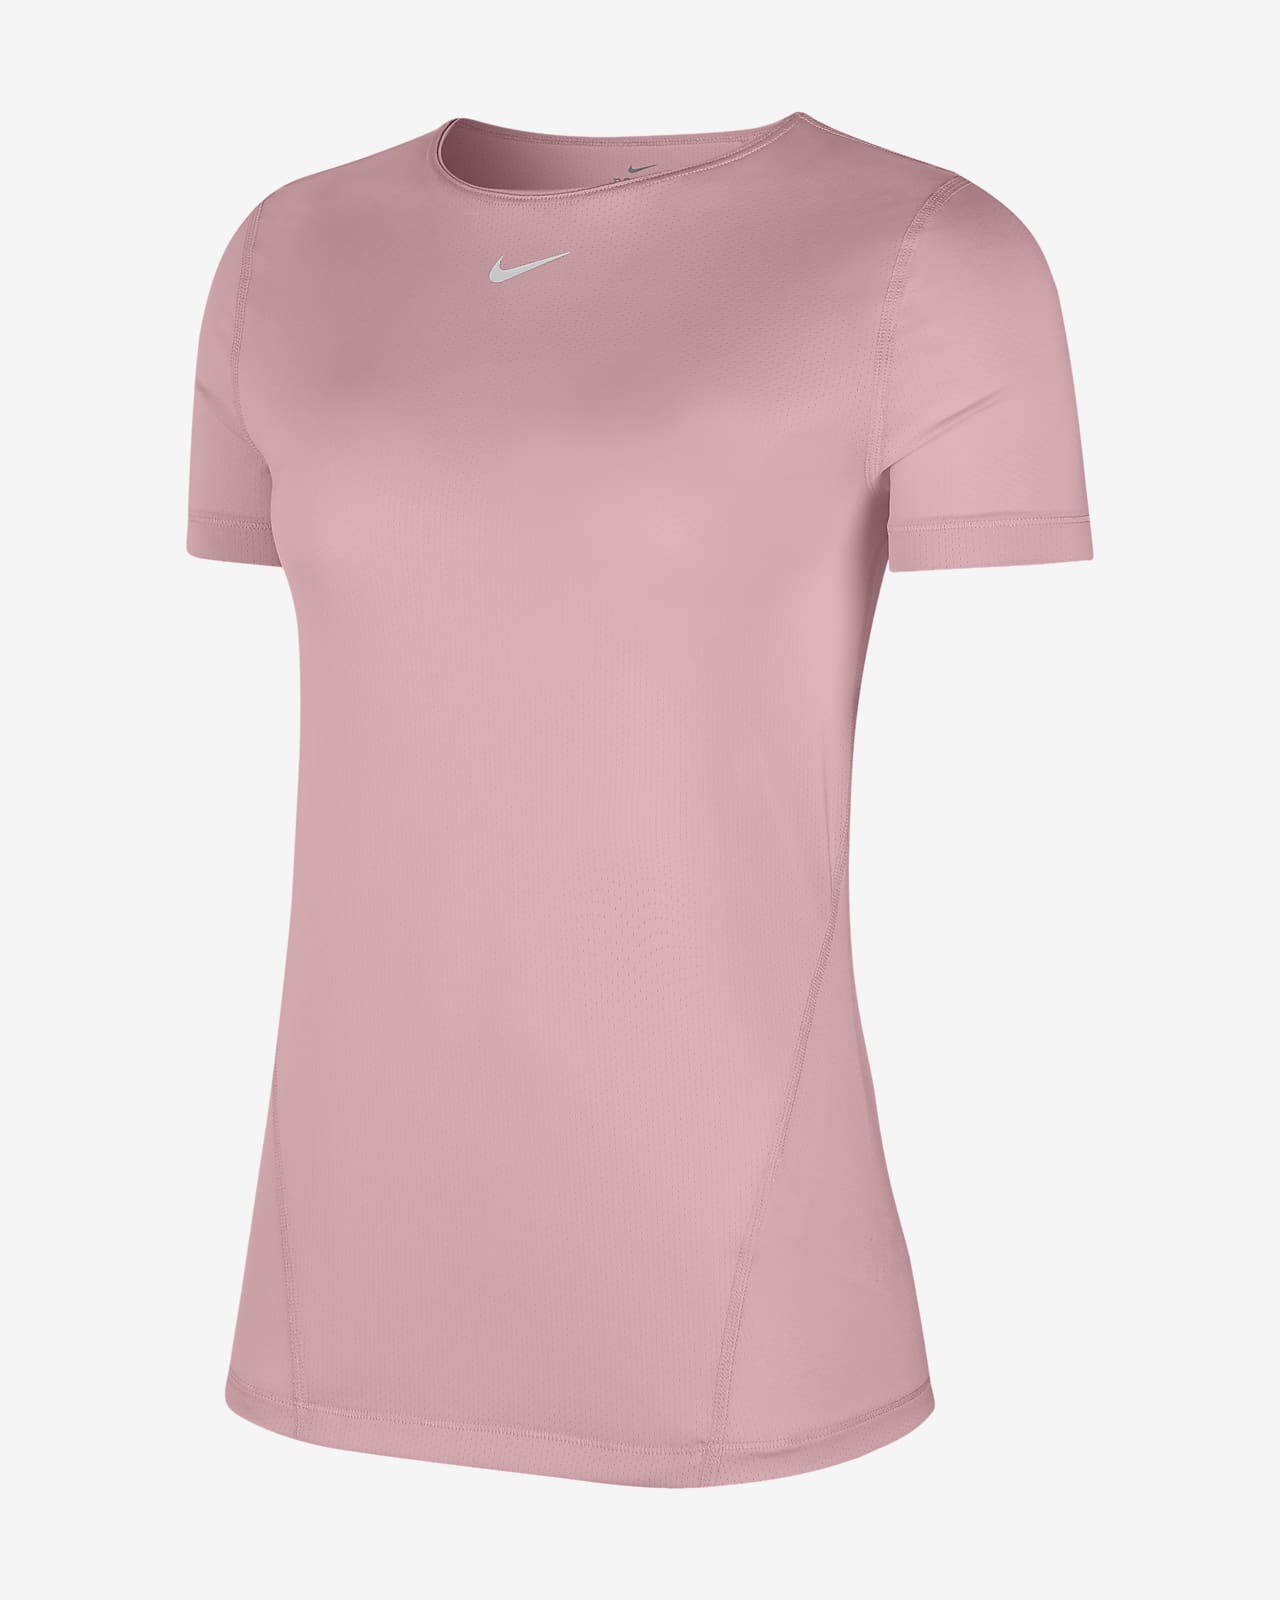 pink plus size nike shirt